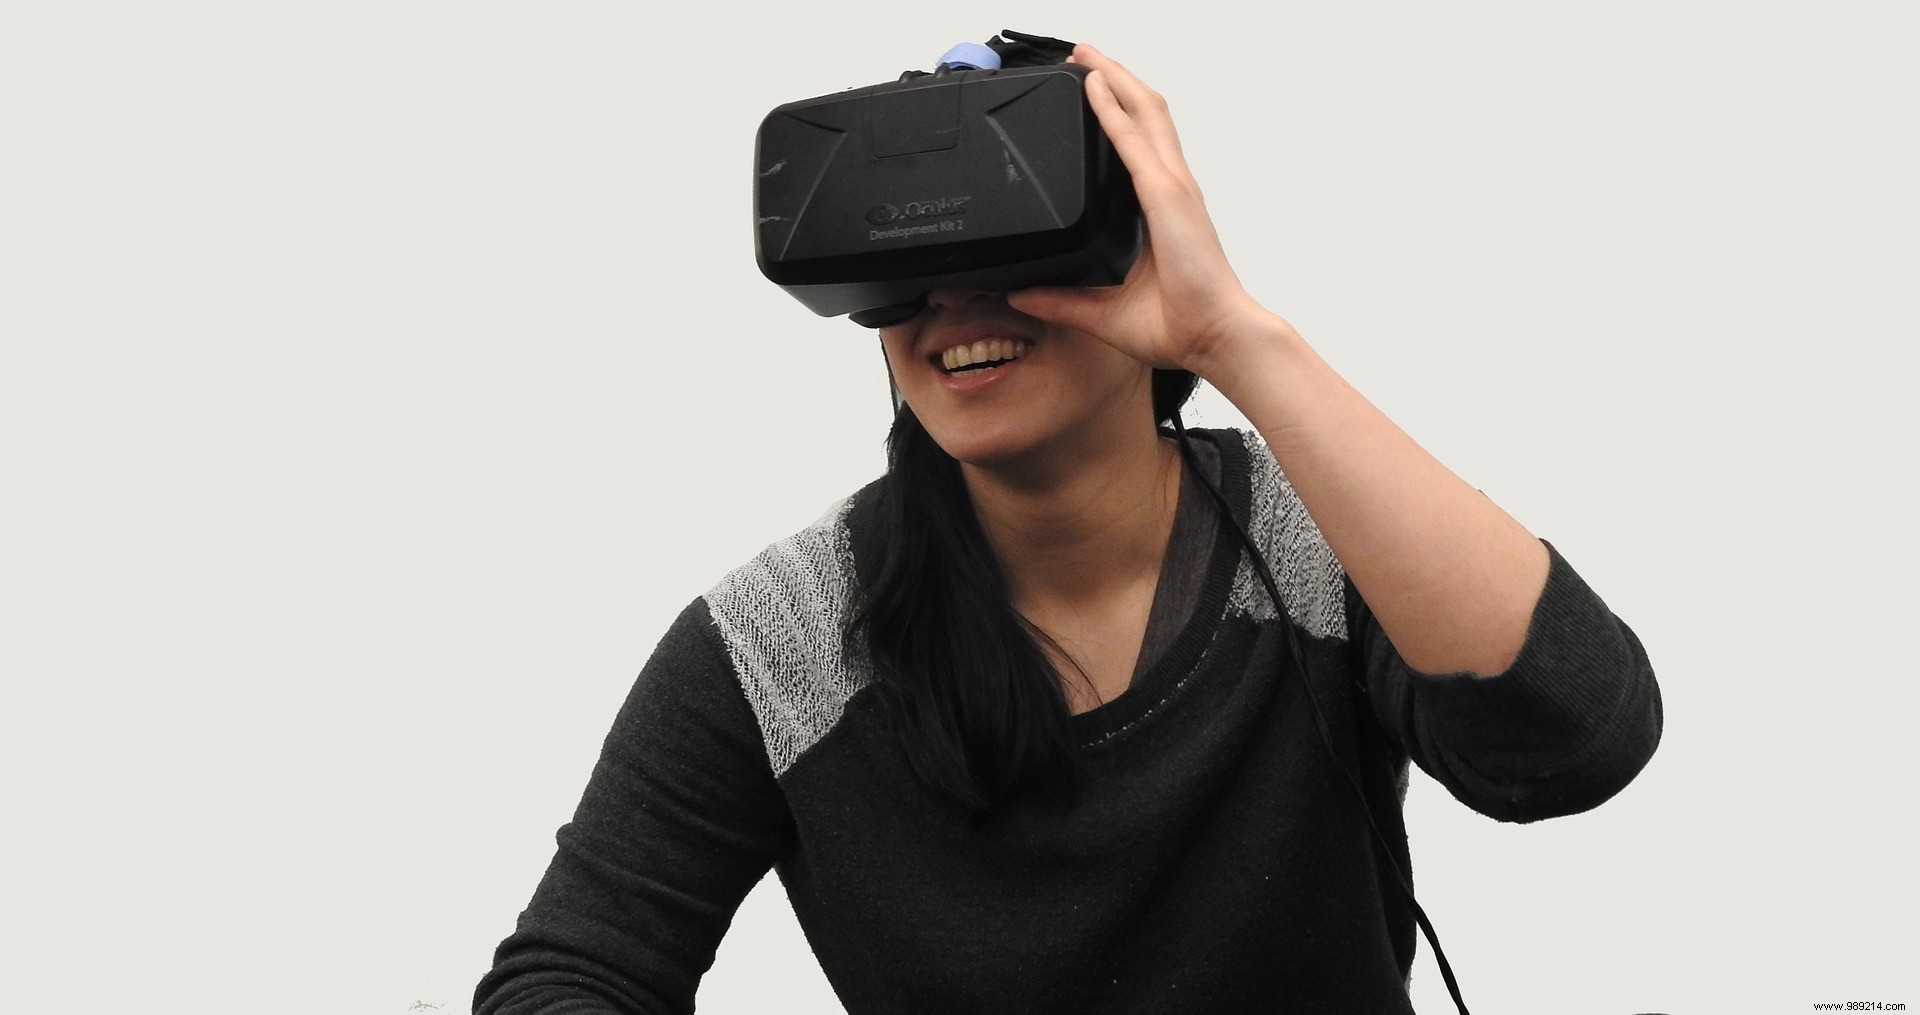 Will virtual reality damage users  eyesight? 